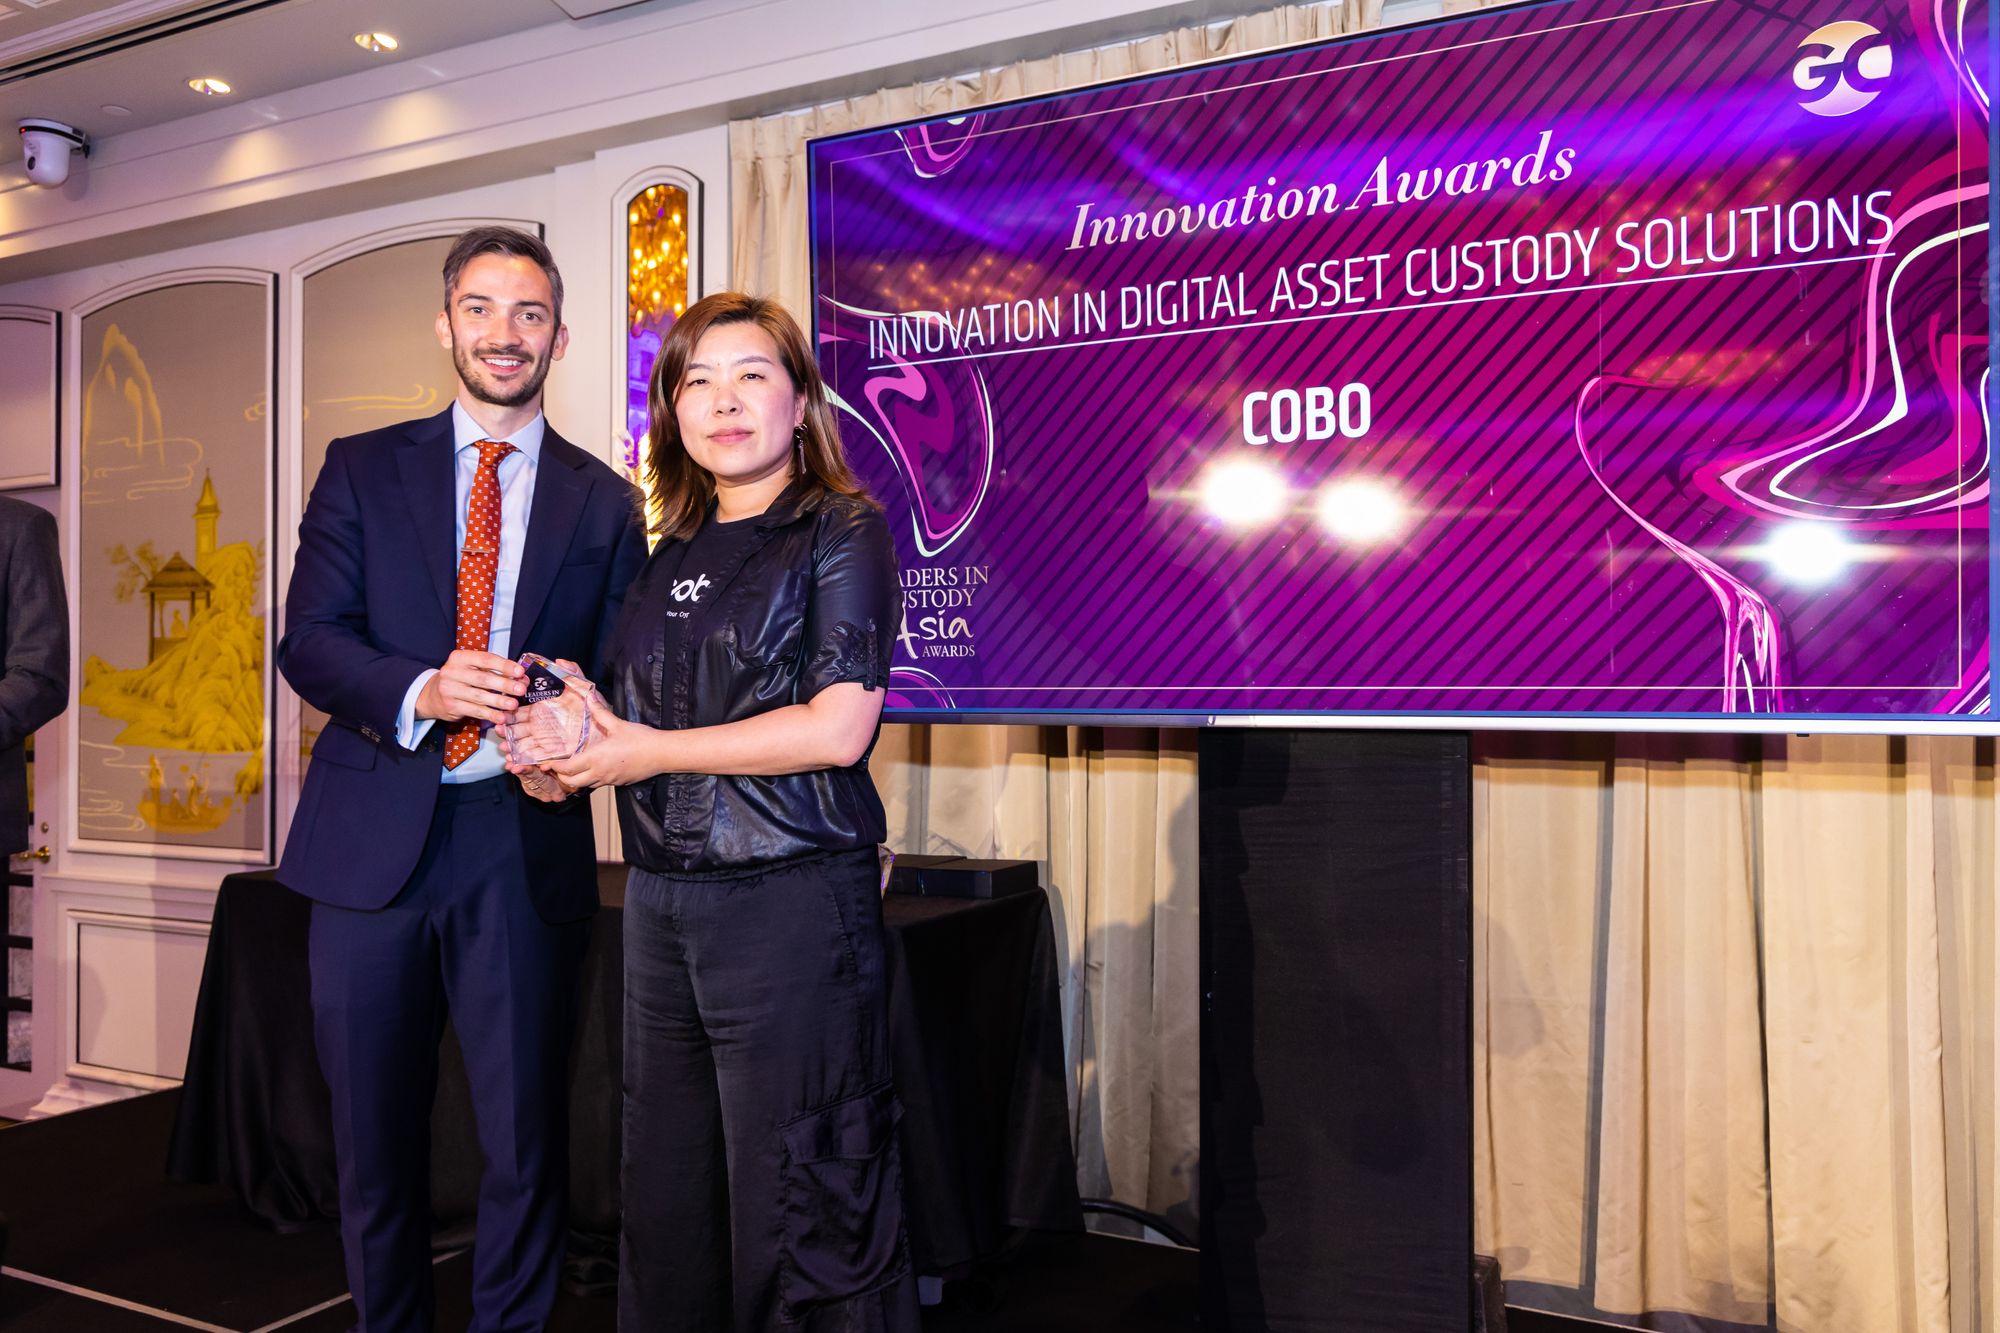 Cobo Wins ‘Innovation in Digital Asset Custody Solutions’ Award